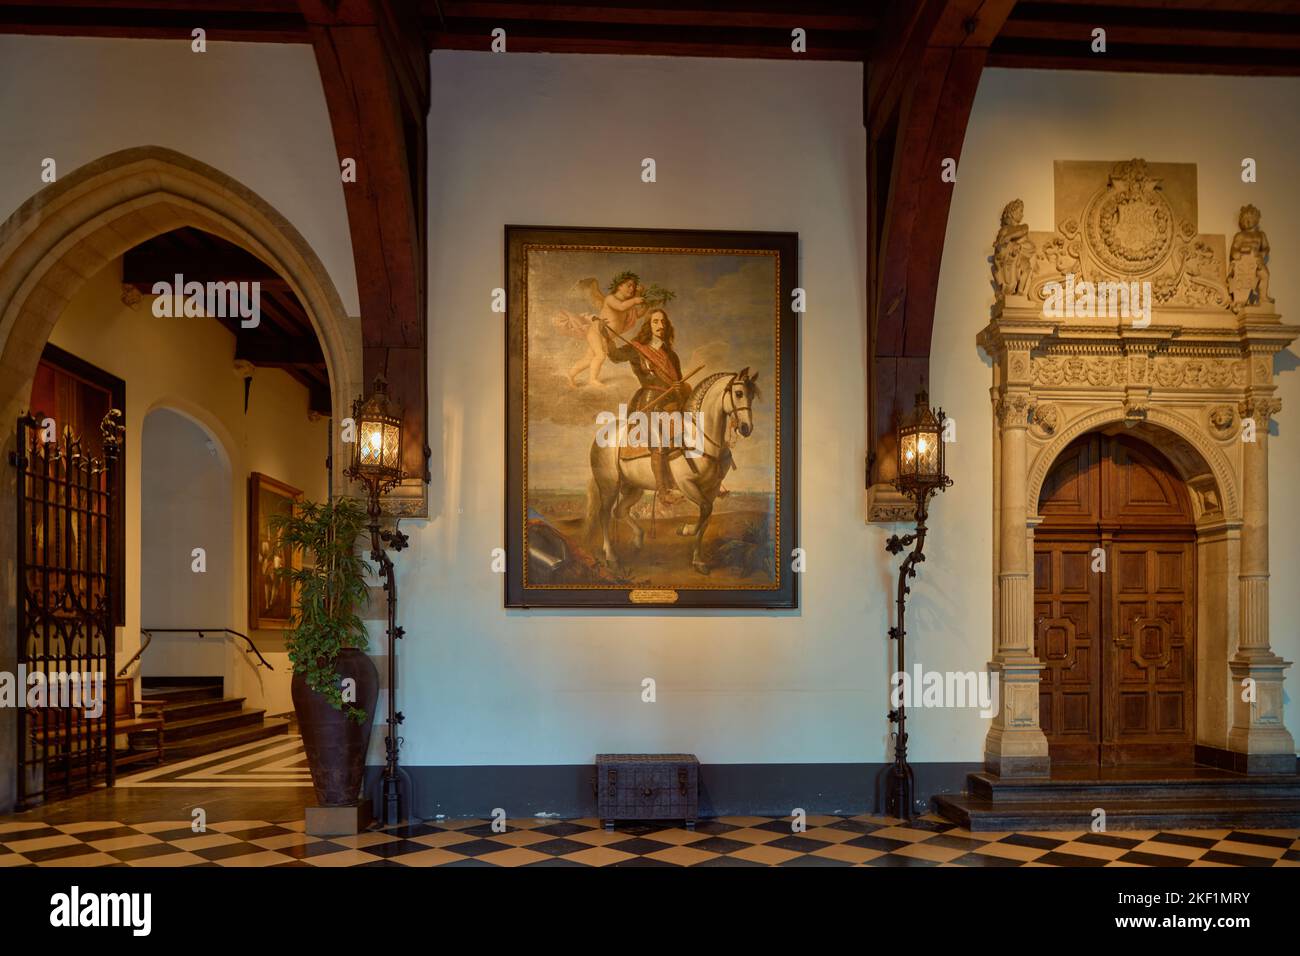 El interior del ayuntamiento de Brujas con una pintura del archiduque Leopold Wilhelm de Austria. Bélgica. Foto de stock